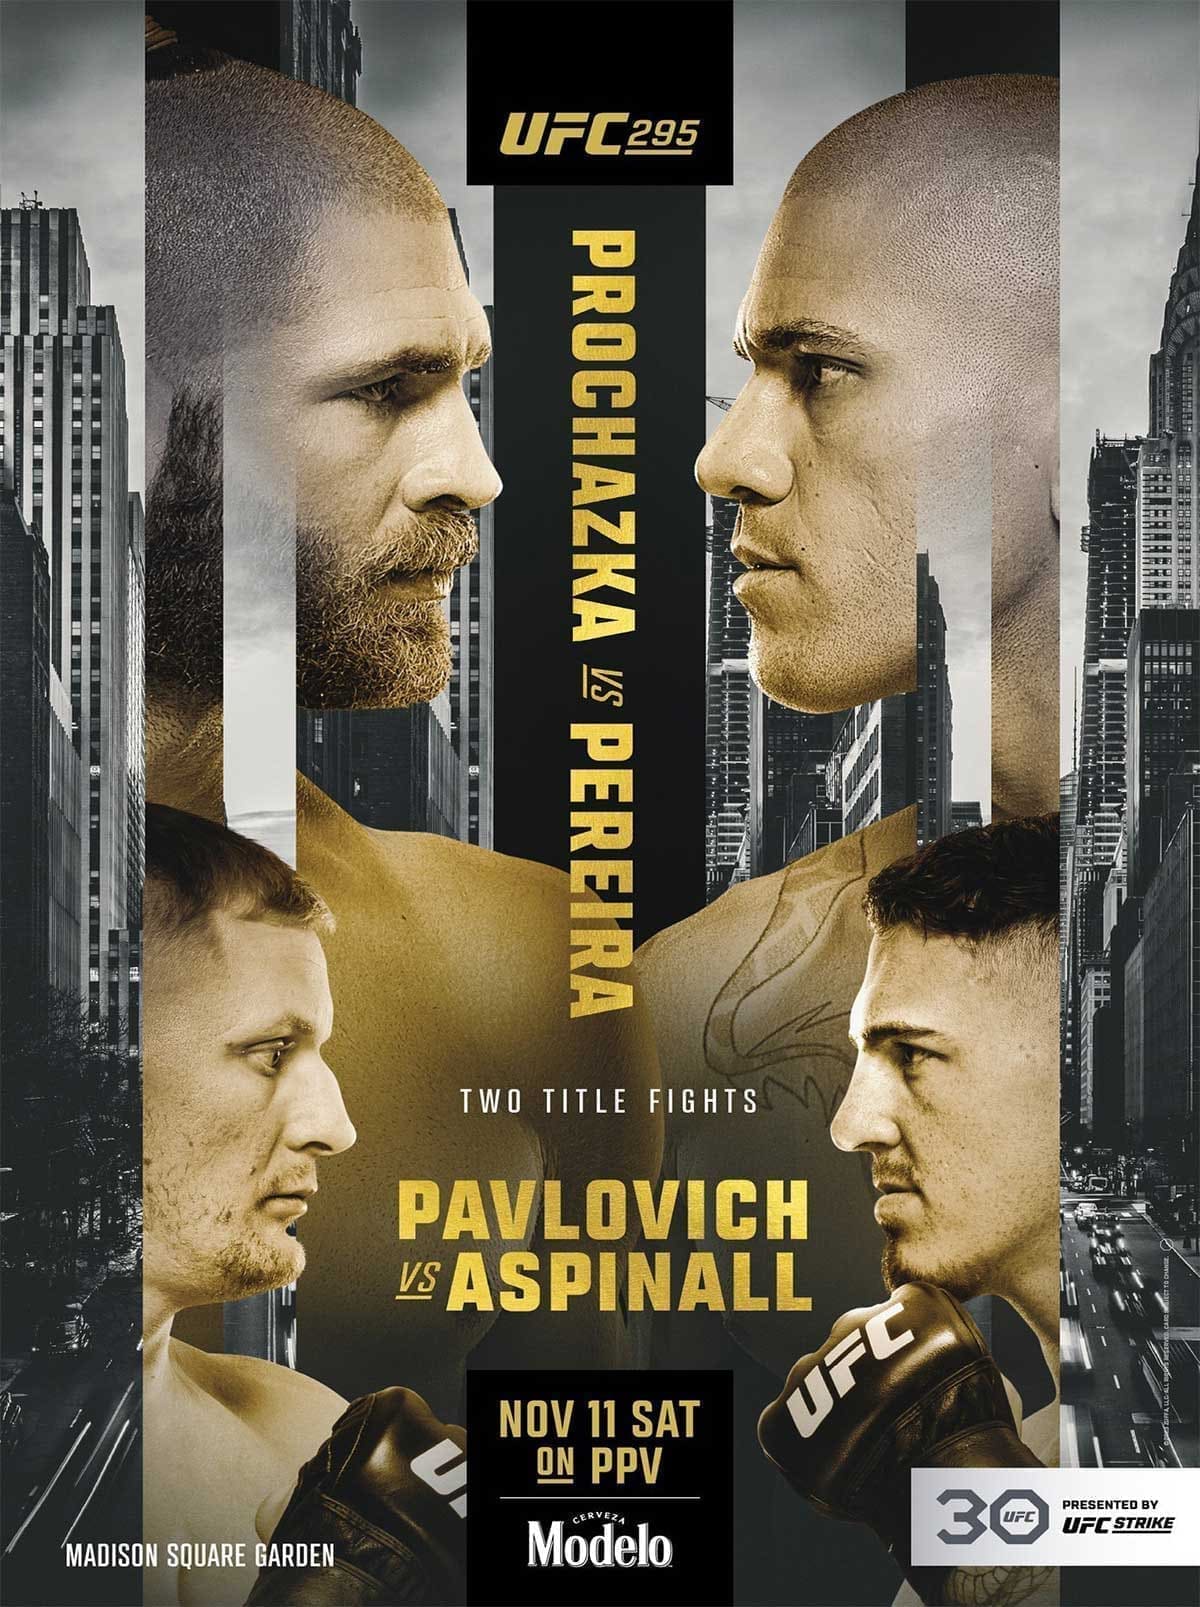 UFC 295: Прохазка - Перейра дата проведения, кард, участники и результаты